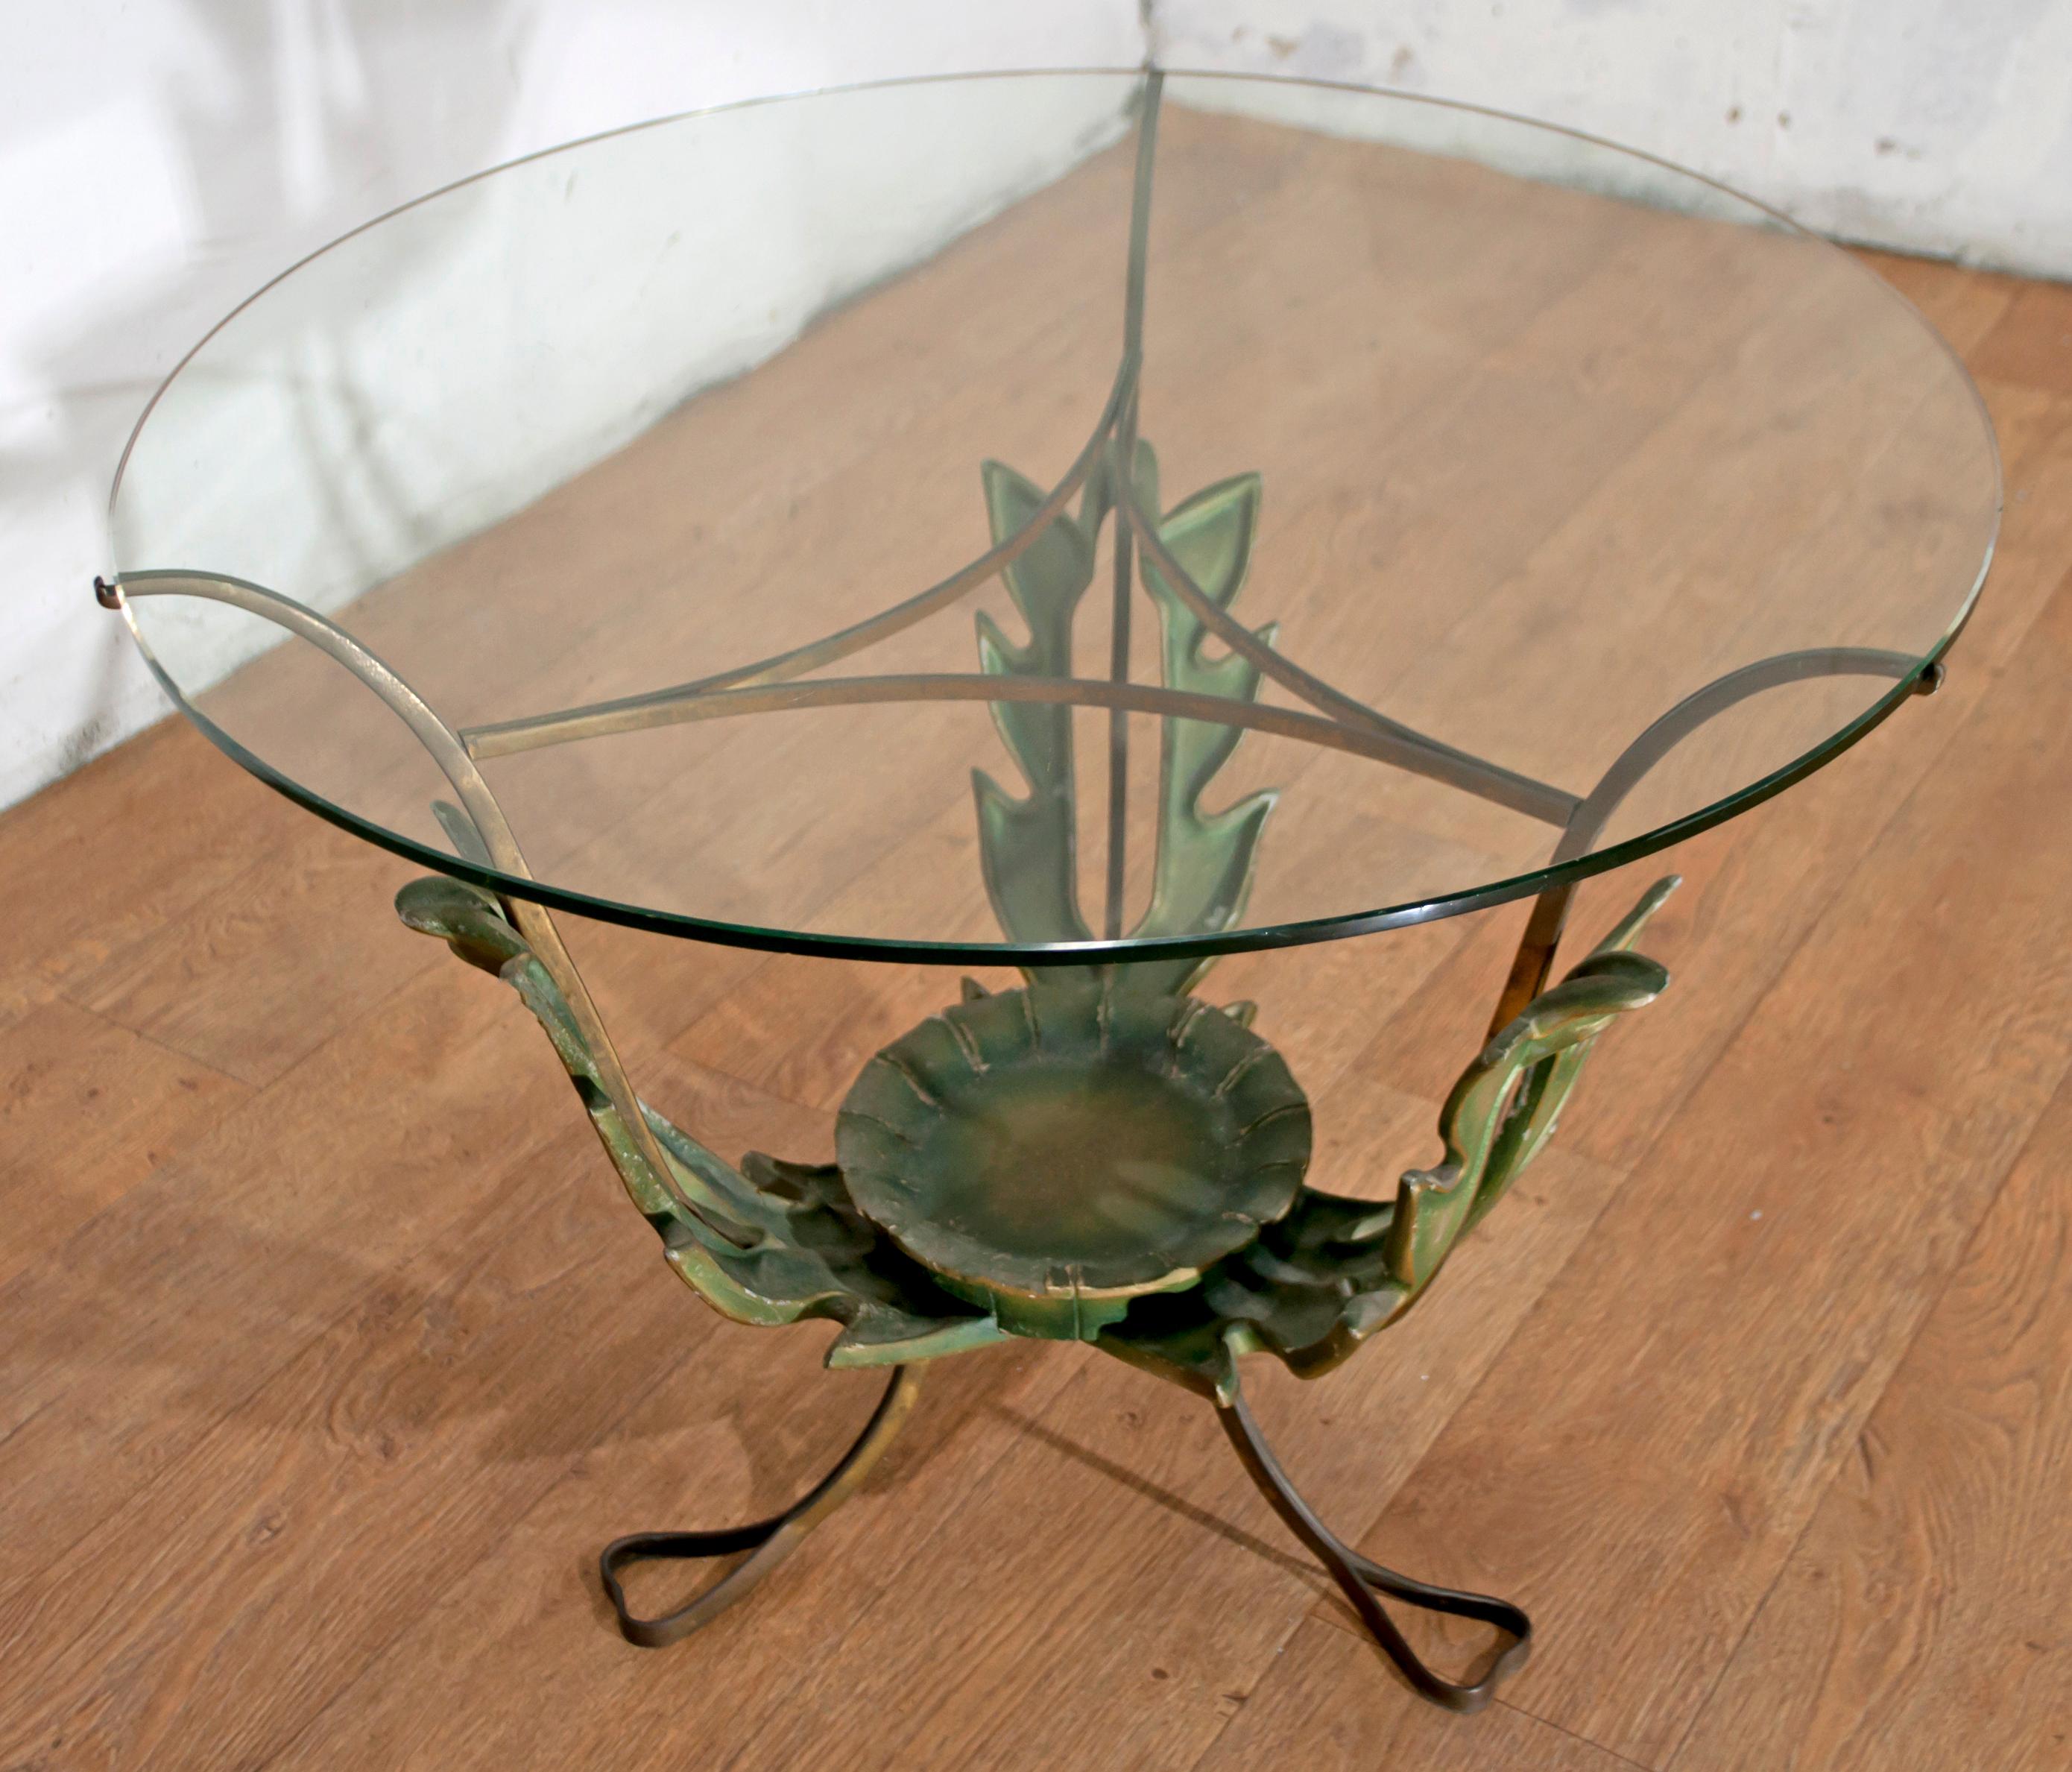 Dieser Tisch wurde von Pier Luigi Colli mit Messingfüßen entworfen, die mit dünnen Bändern enden und die runde Glasplatte tragen. Die Messingkonstruktion hat drei große, vereinfachte, aber sehr dekorative Blätter, die in der Mitte ein kleines